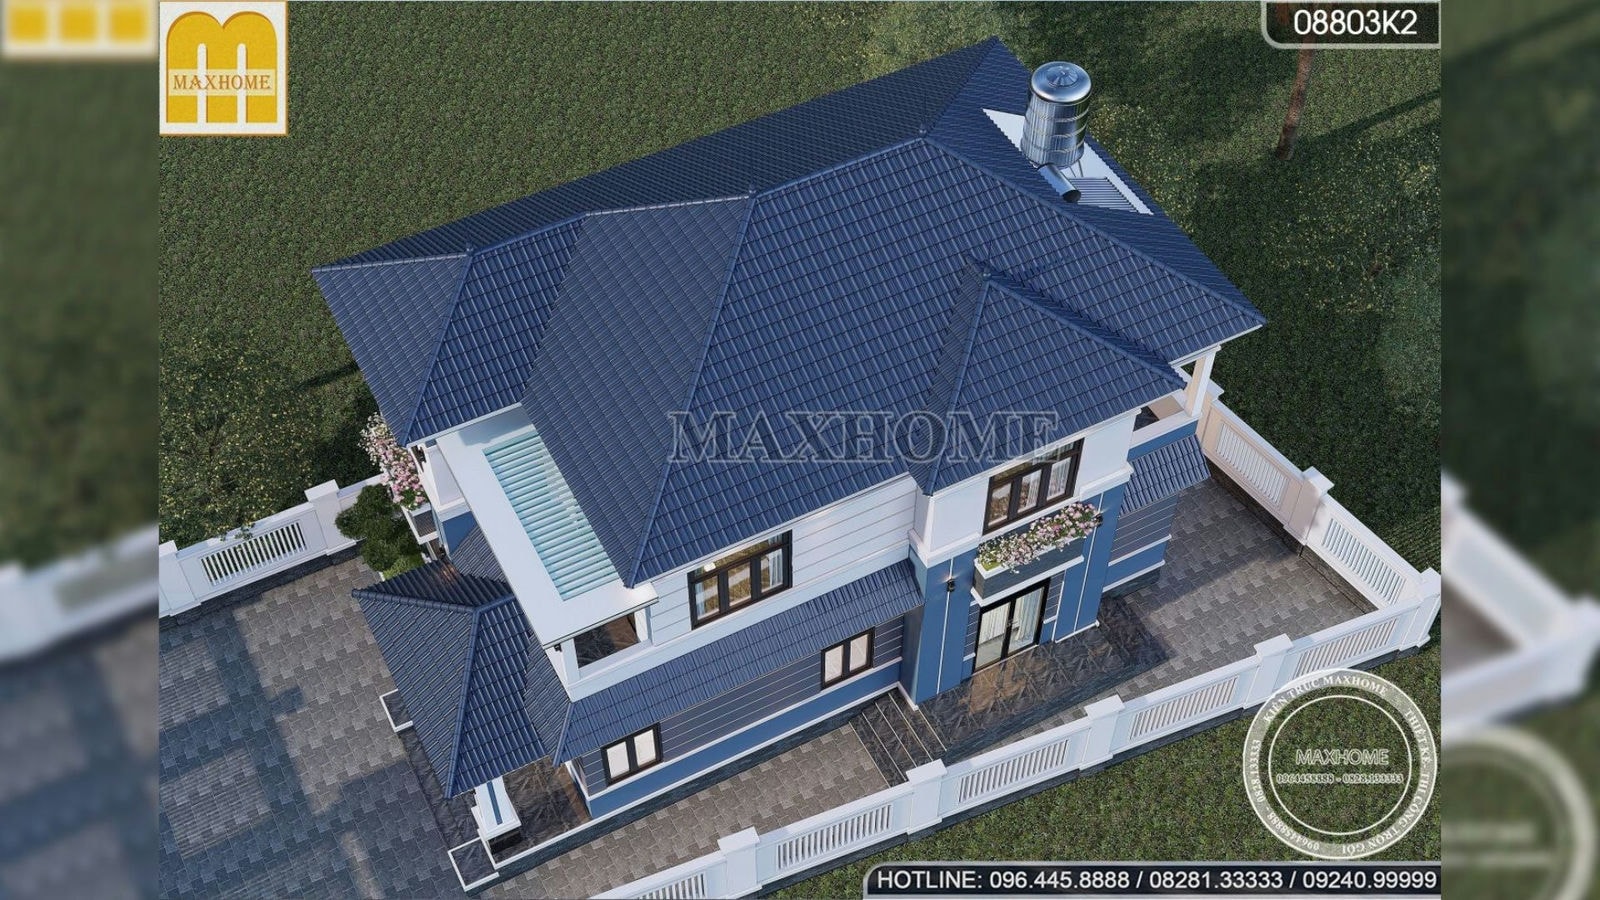 Tậu ngay ngôi nhà mái Nhật 2 tầng cực đẹp này với giá từ 1,2 tỷ | MH02119